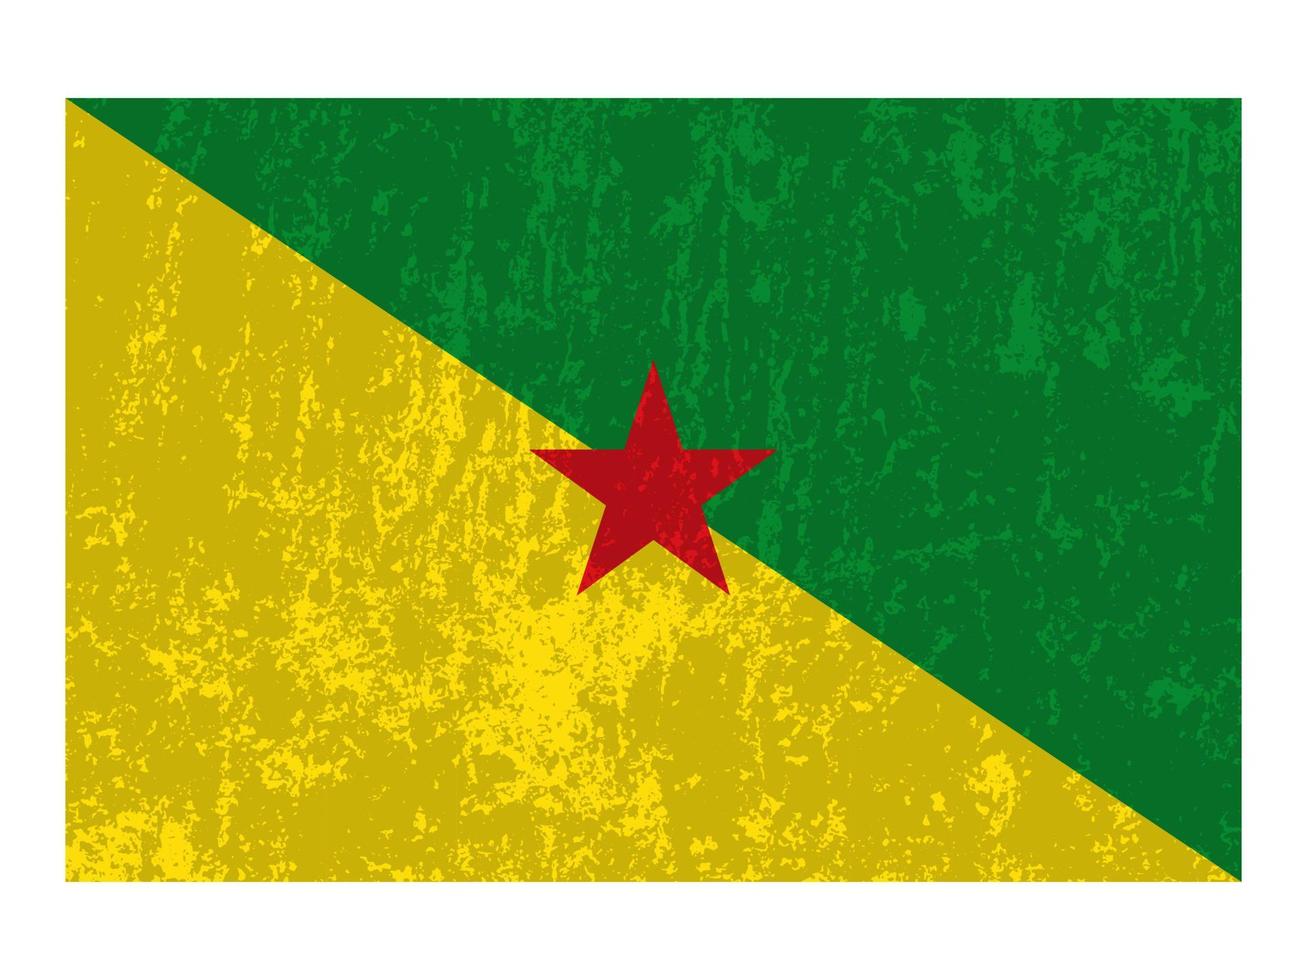 franska Guyana grunge flagga, officiell färger och andel. vektor illustration.